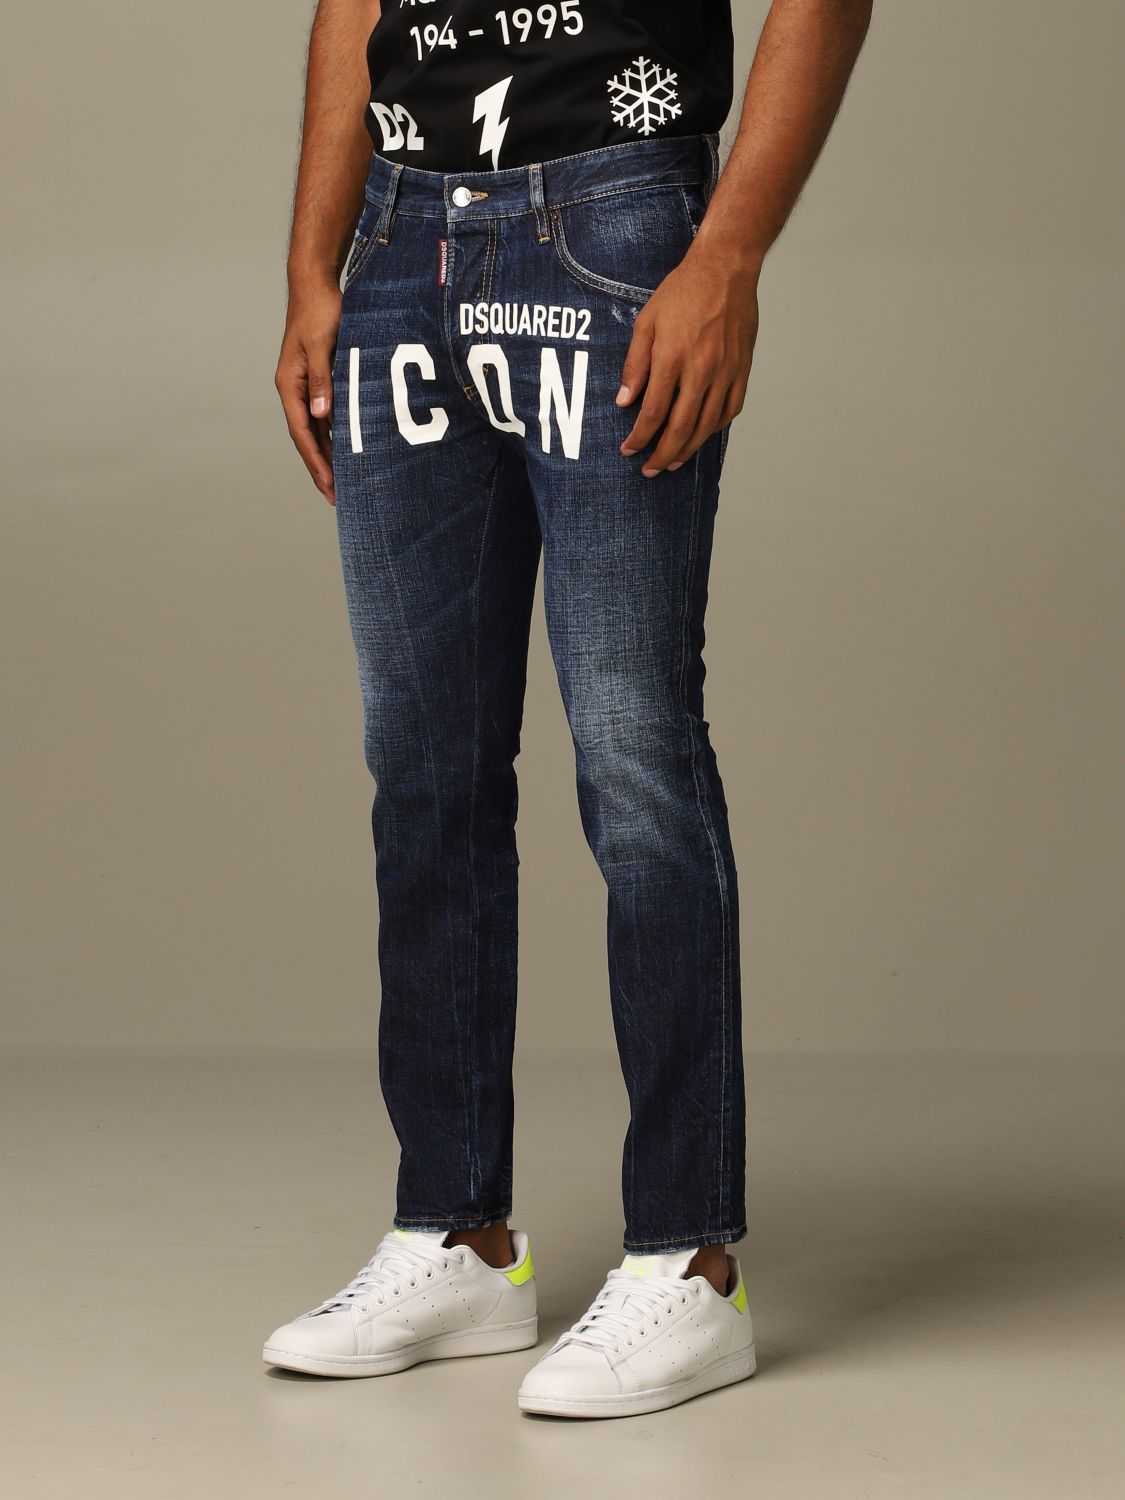 Zurückhalten Bedingt Einkommen dsquared icon jeans Plus Glossar Mischen